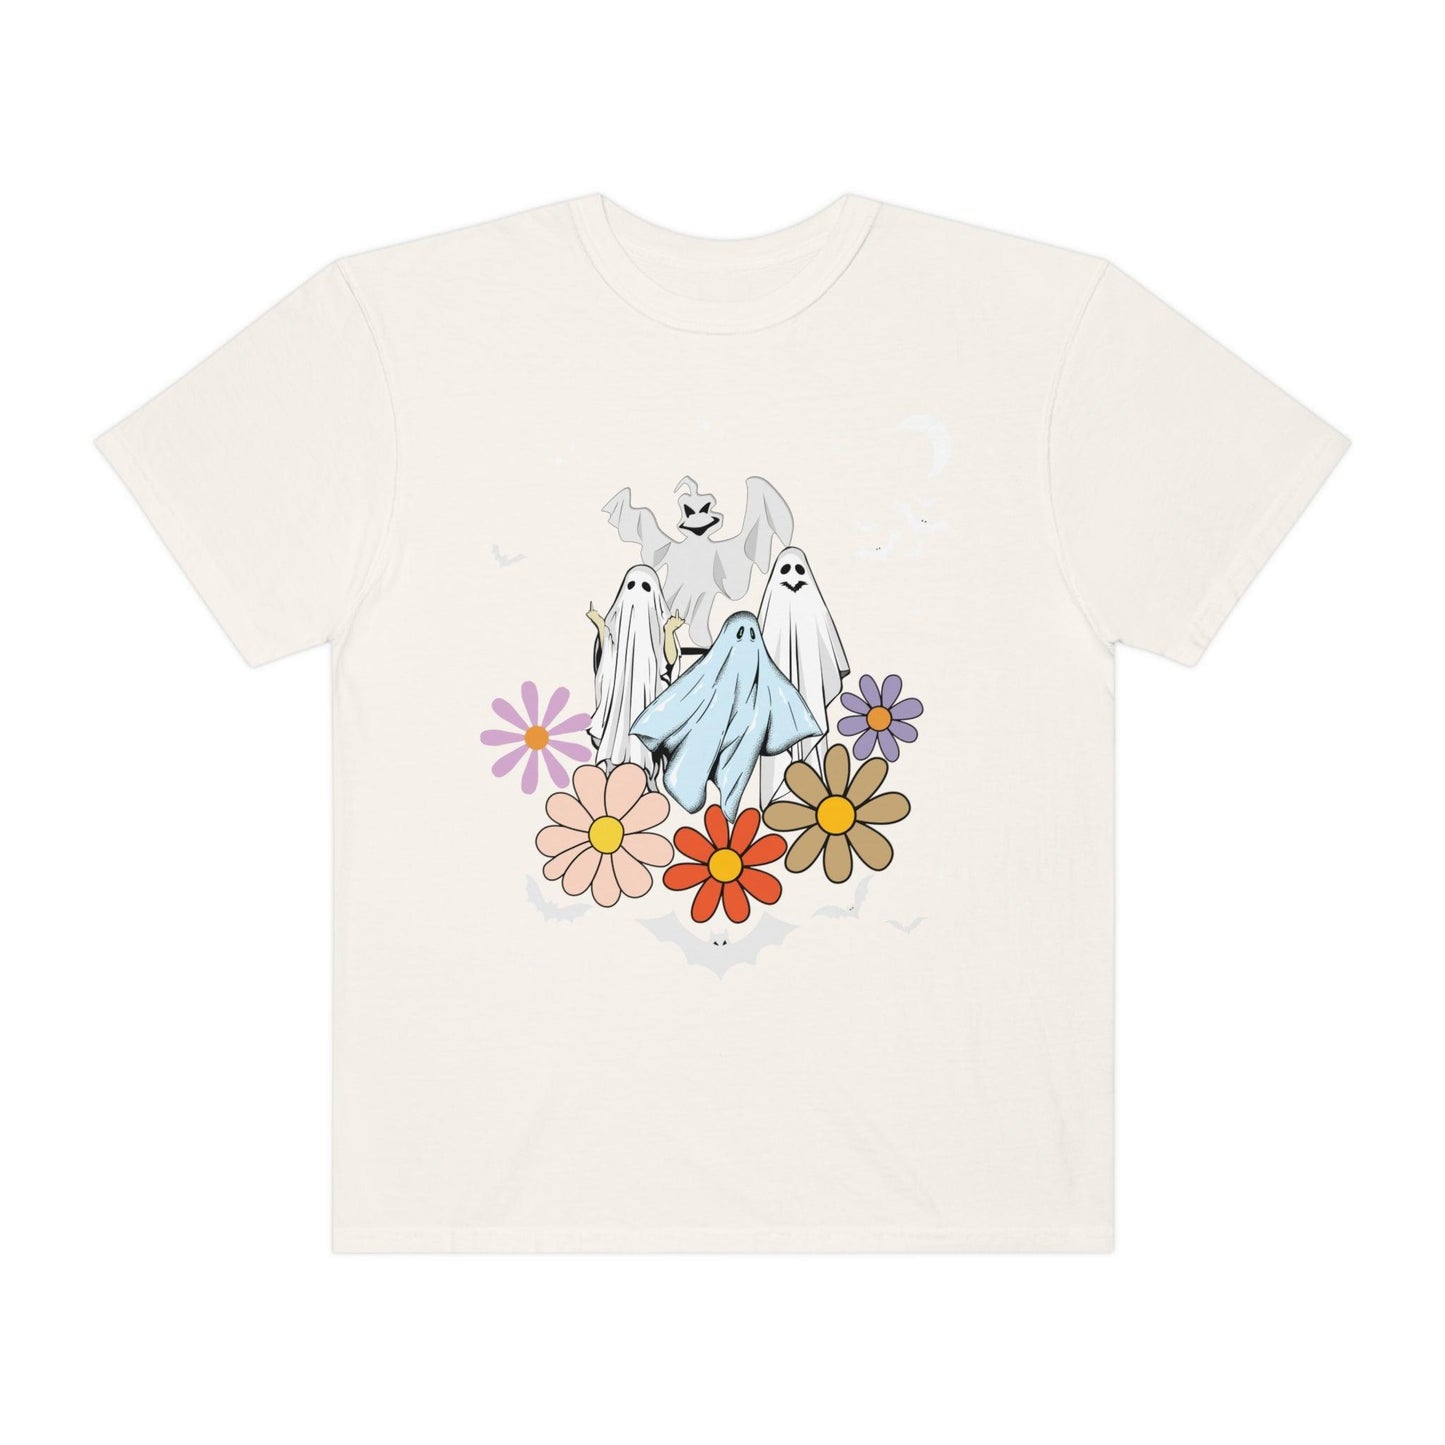 Retro Halloween Tshirt, Trick or Treat shirt, Vintage Shirt Halloween Shirt, floral Ghost Shirt